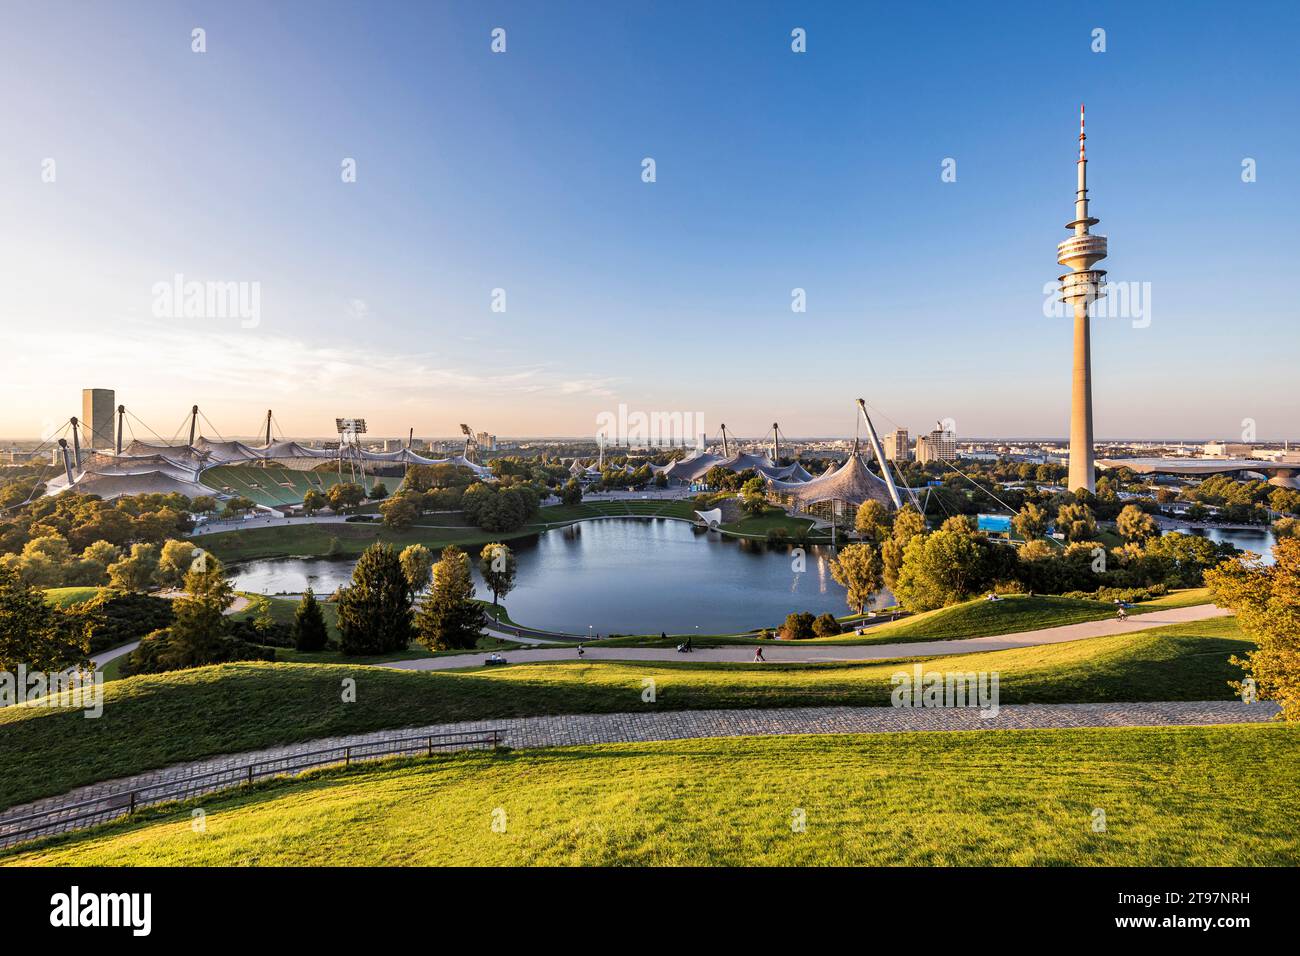 Deutschland, Bayern, München, Olympiapark in der Abenddämmerung mit Olympiaturm, BMW-Gebäude und Teich im Hintergrund Stockfoto